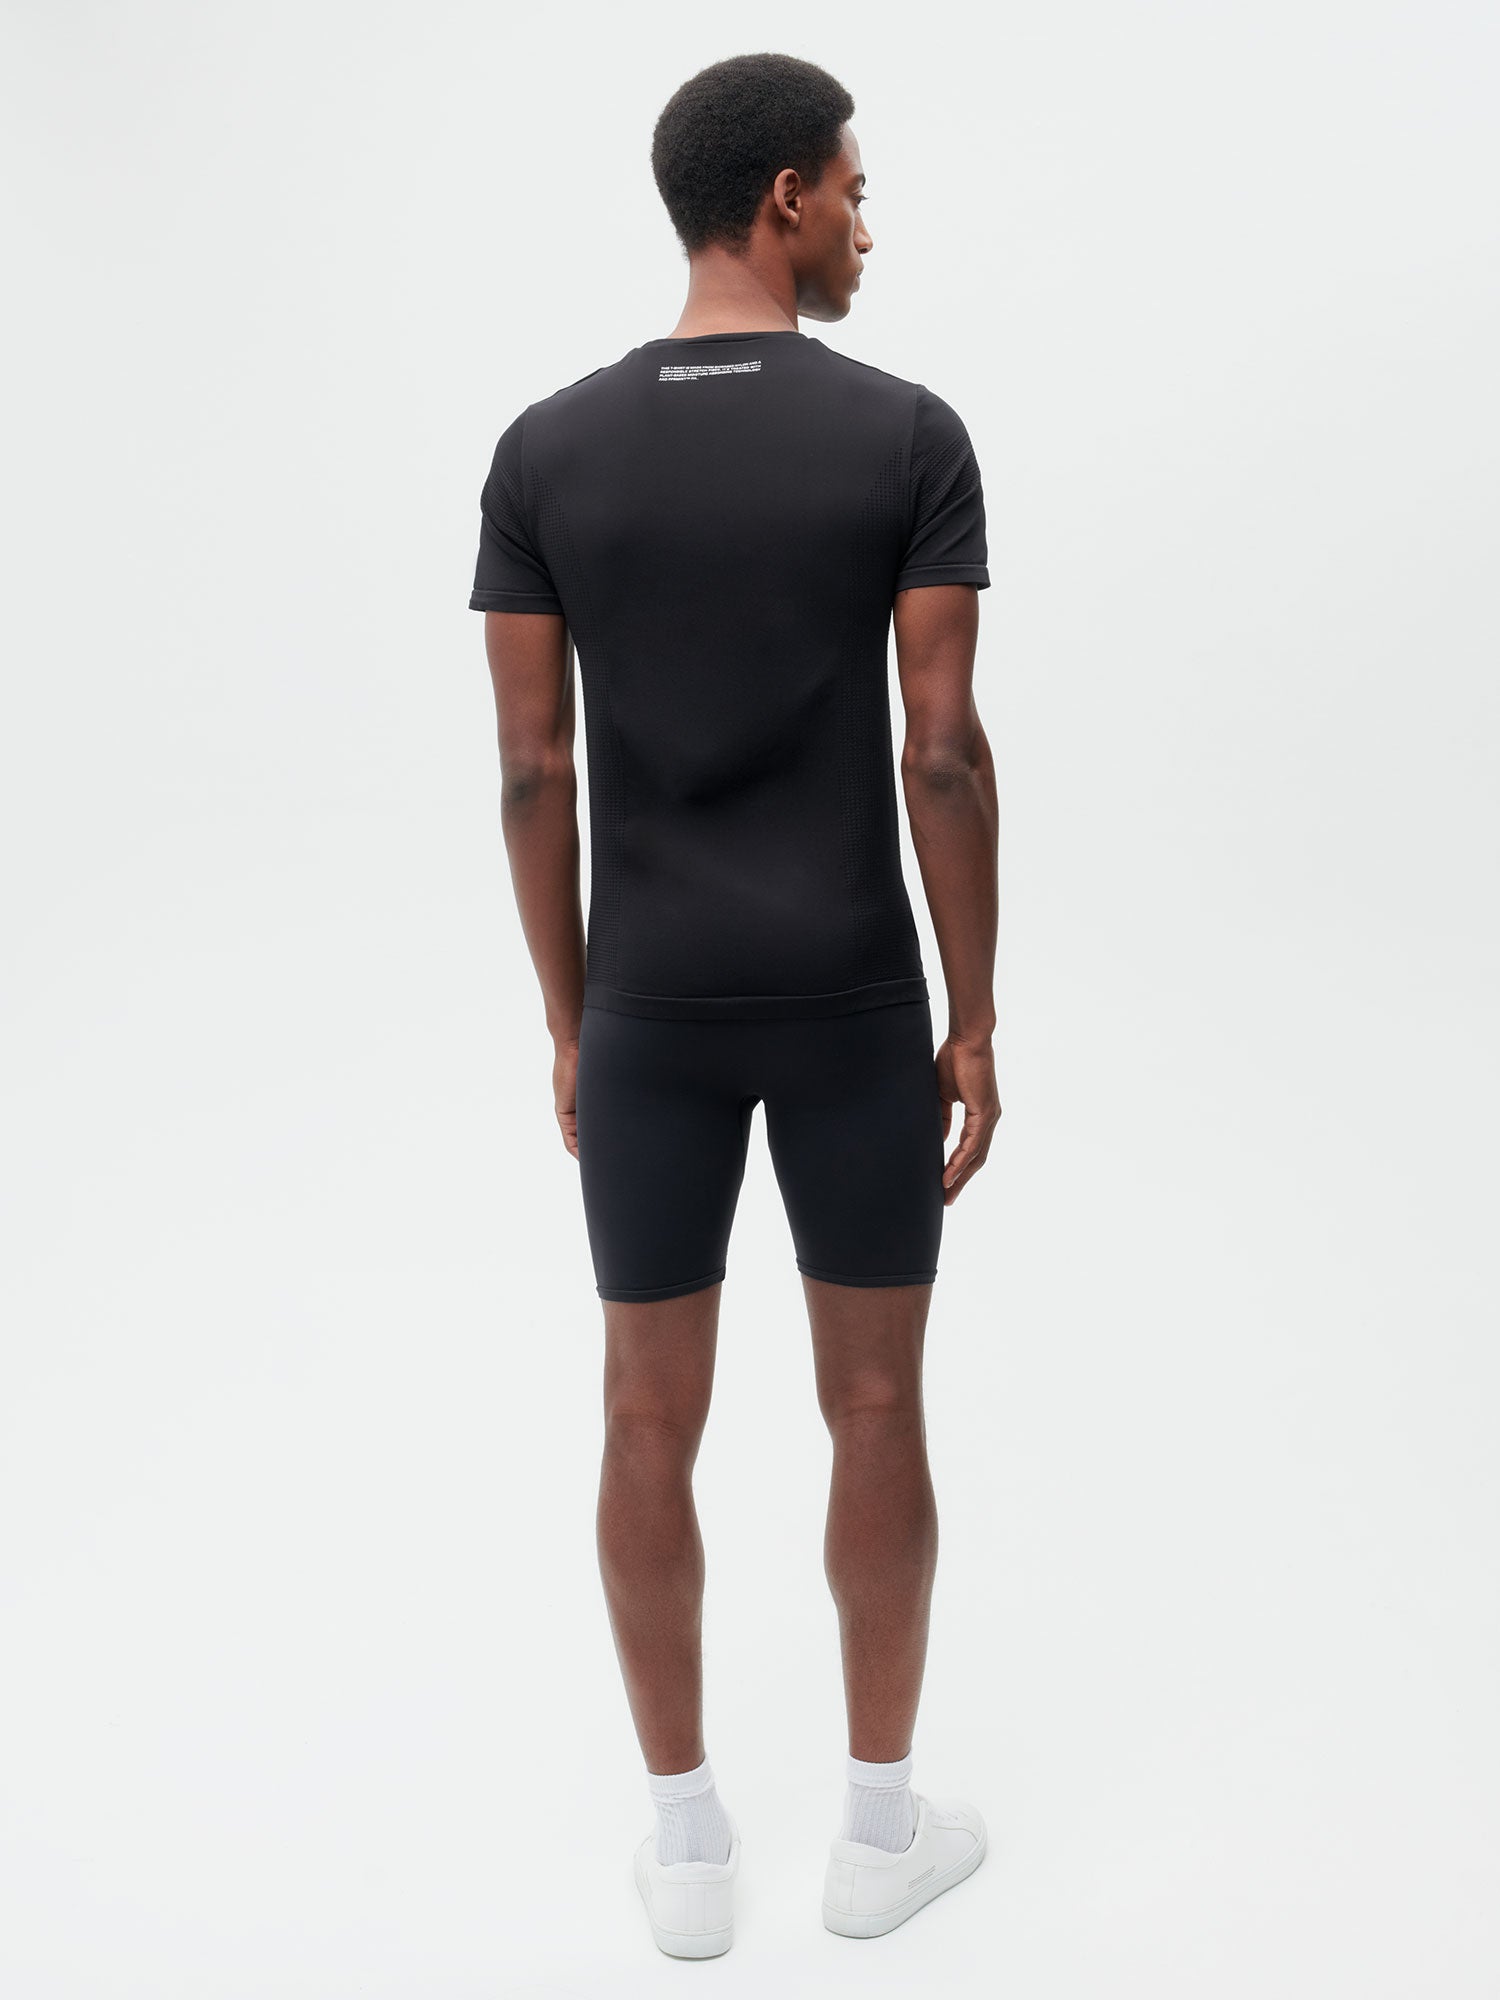 Activewear Mens Shorts Black 